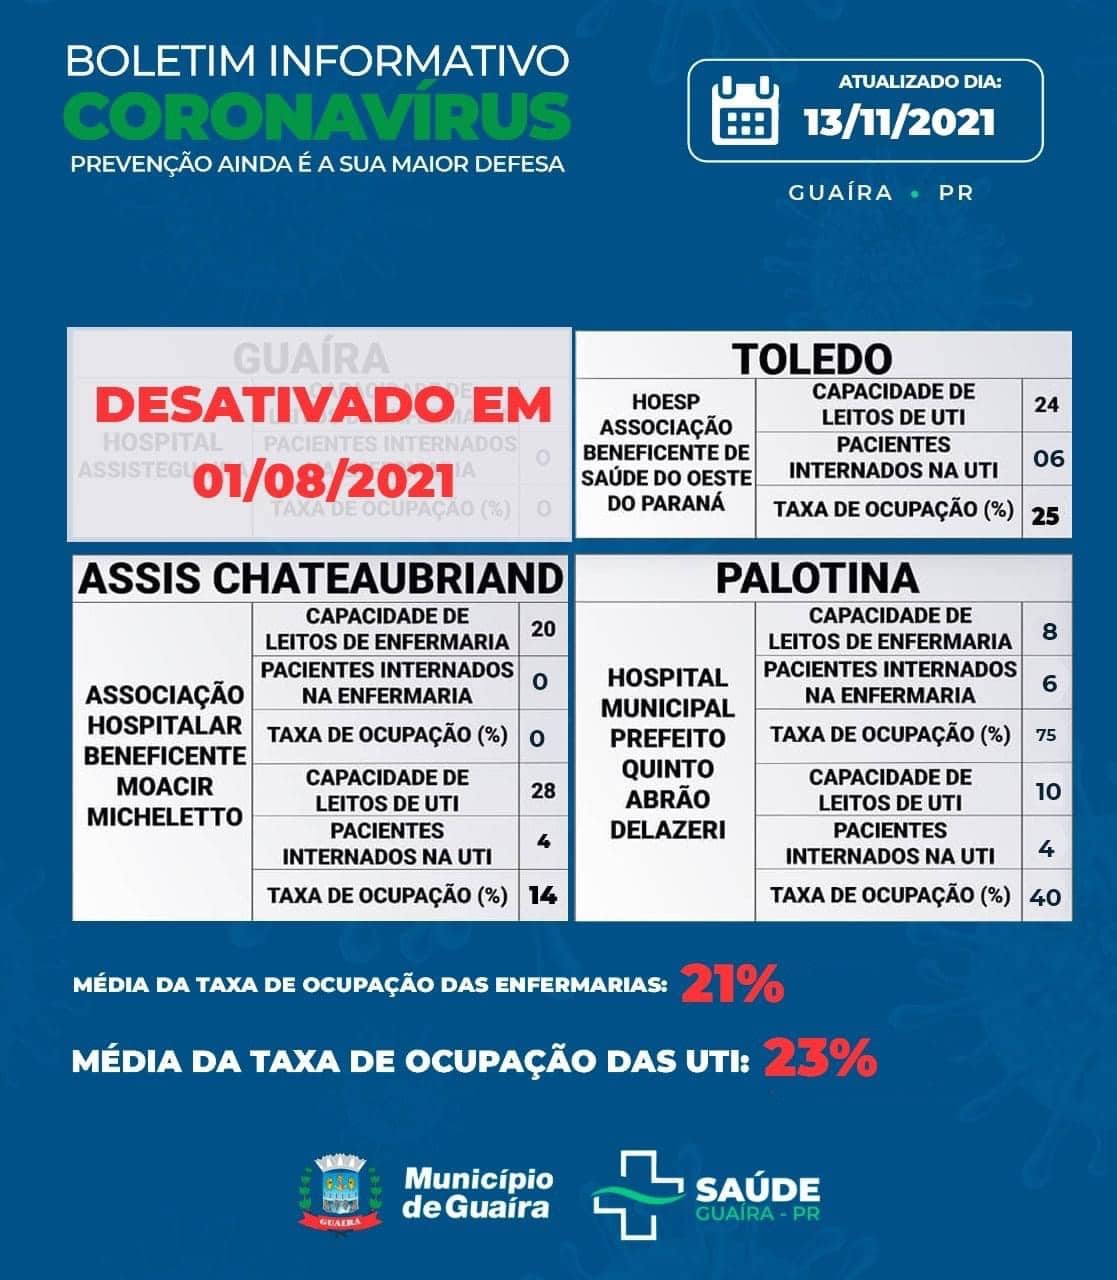 Guaíra - Saúde informa 20 casos ativos e 4098 recuperados da Covid-19 • Portal Guaíra